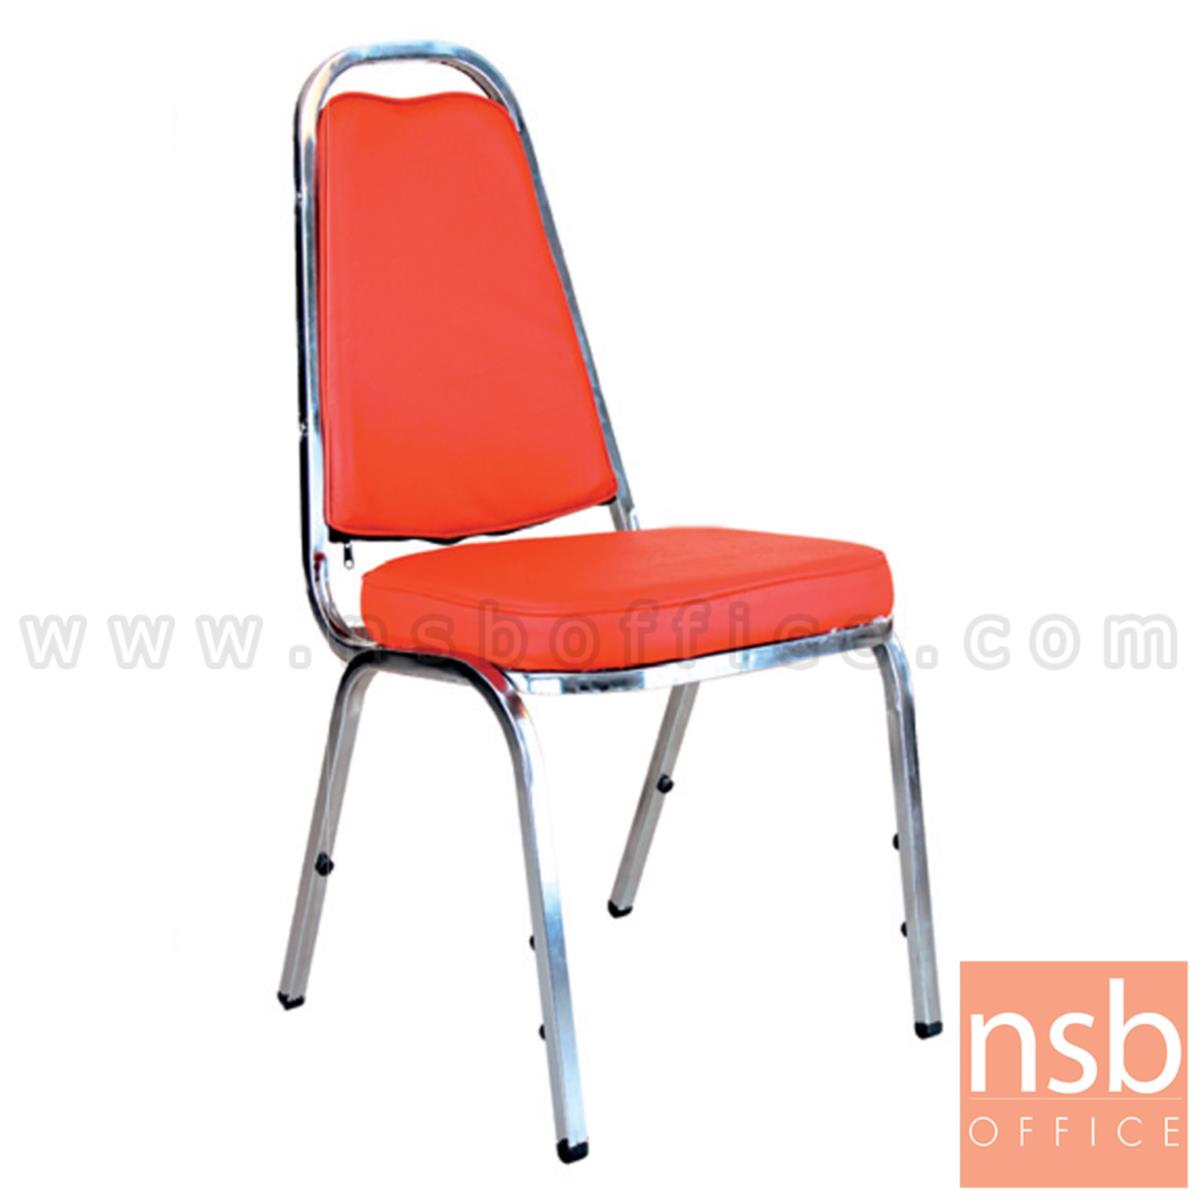 B05A007:เก้าอี้อเนกประสงค์จัดเลี้ยง รุ่น Brosnan (บรอสแนน) ขาเหล็ก 